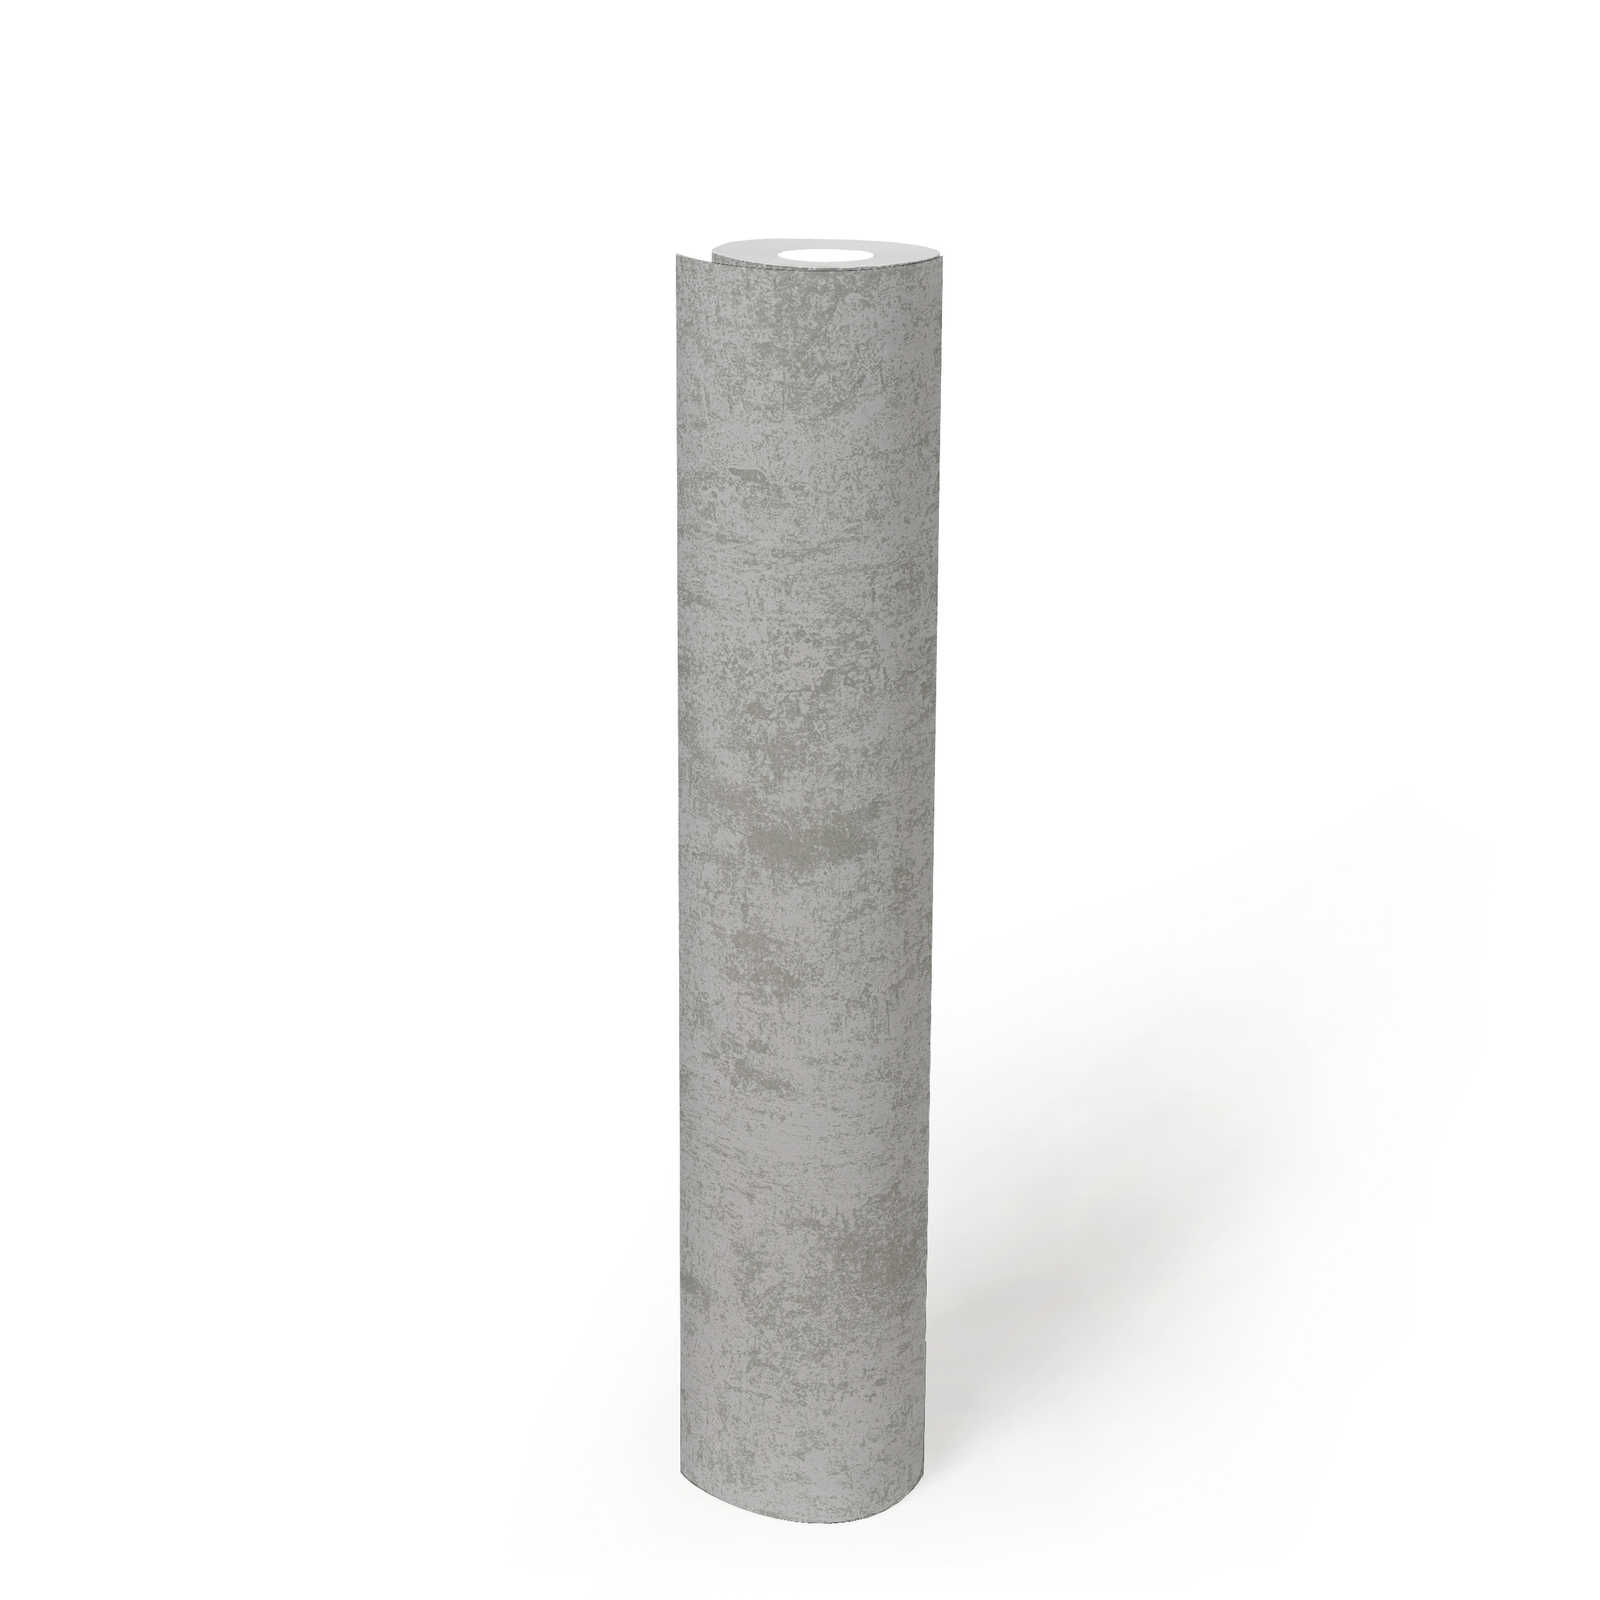             papier peint en papier imitation métal lisse brillant - argent, gris, métallique
        